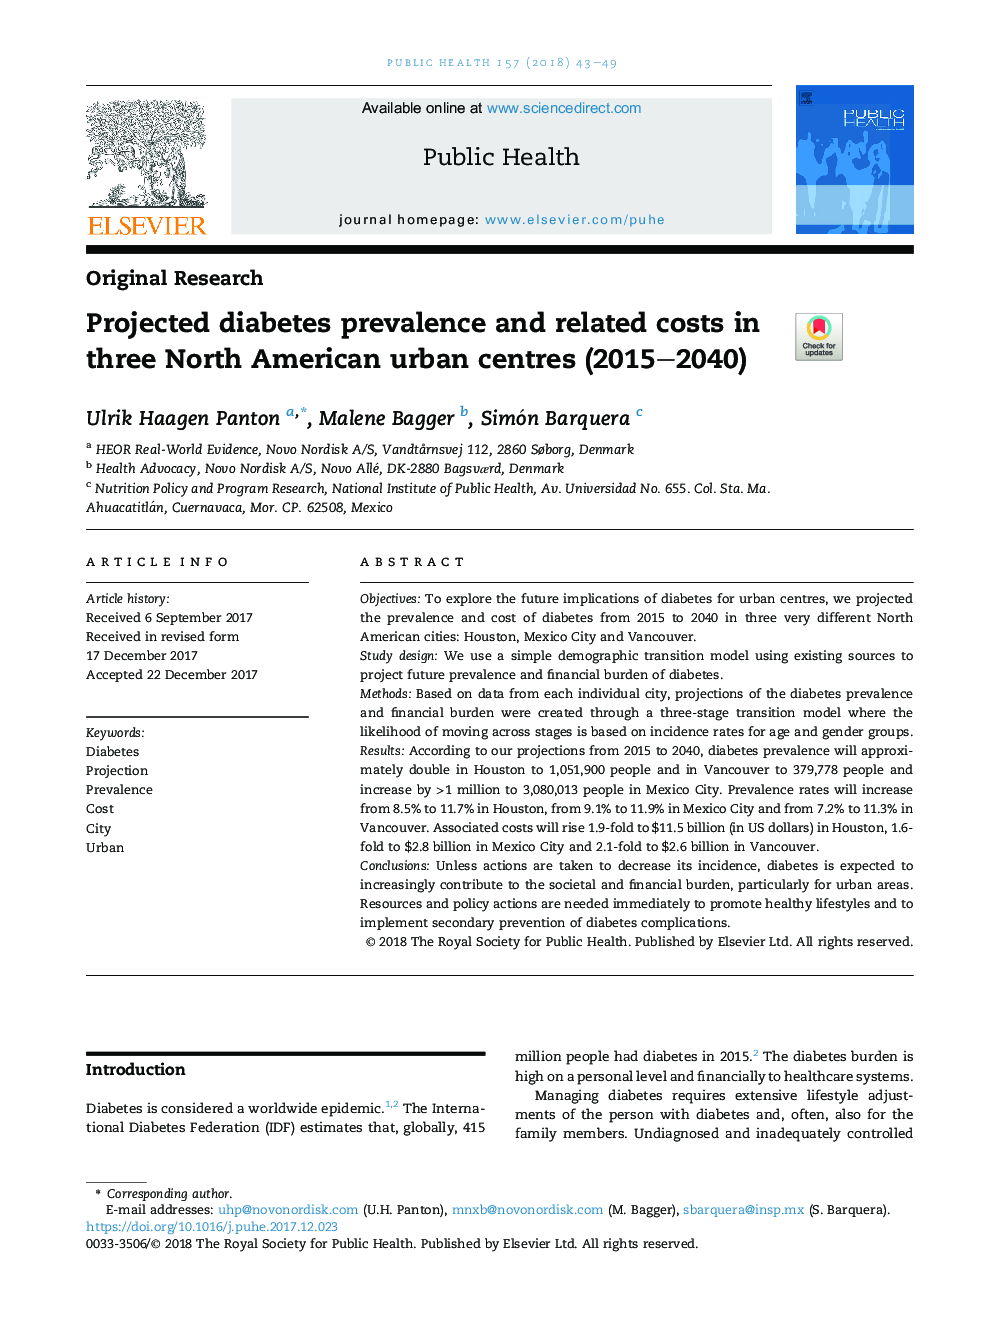 شیوع دیابت پیش بینی شده و هزینه های مربوط به آن در سه مرکز شهری آمریکای شمالی (2040-2015) 